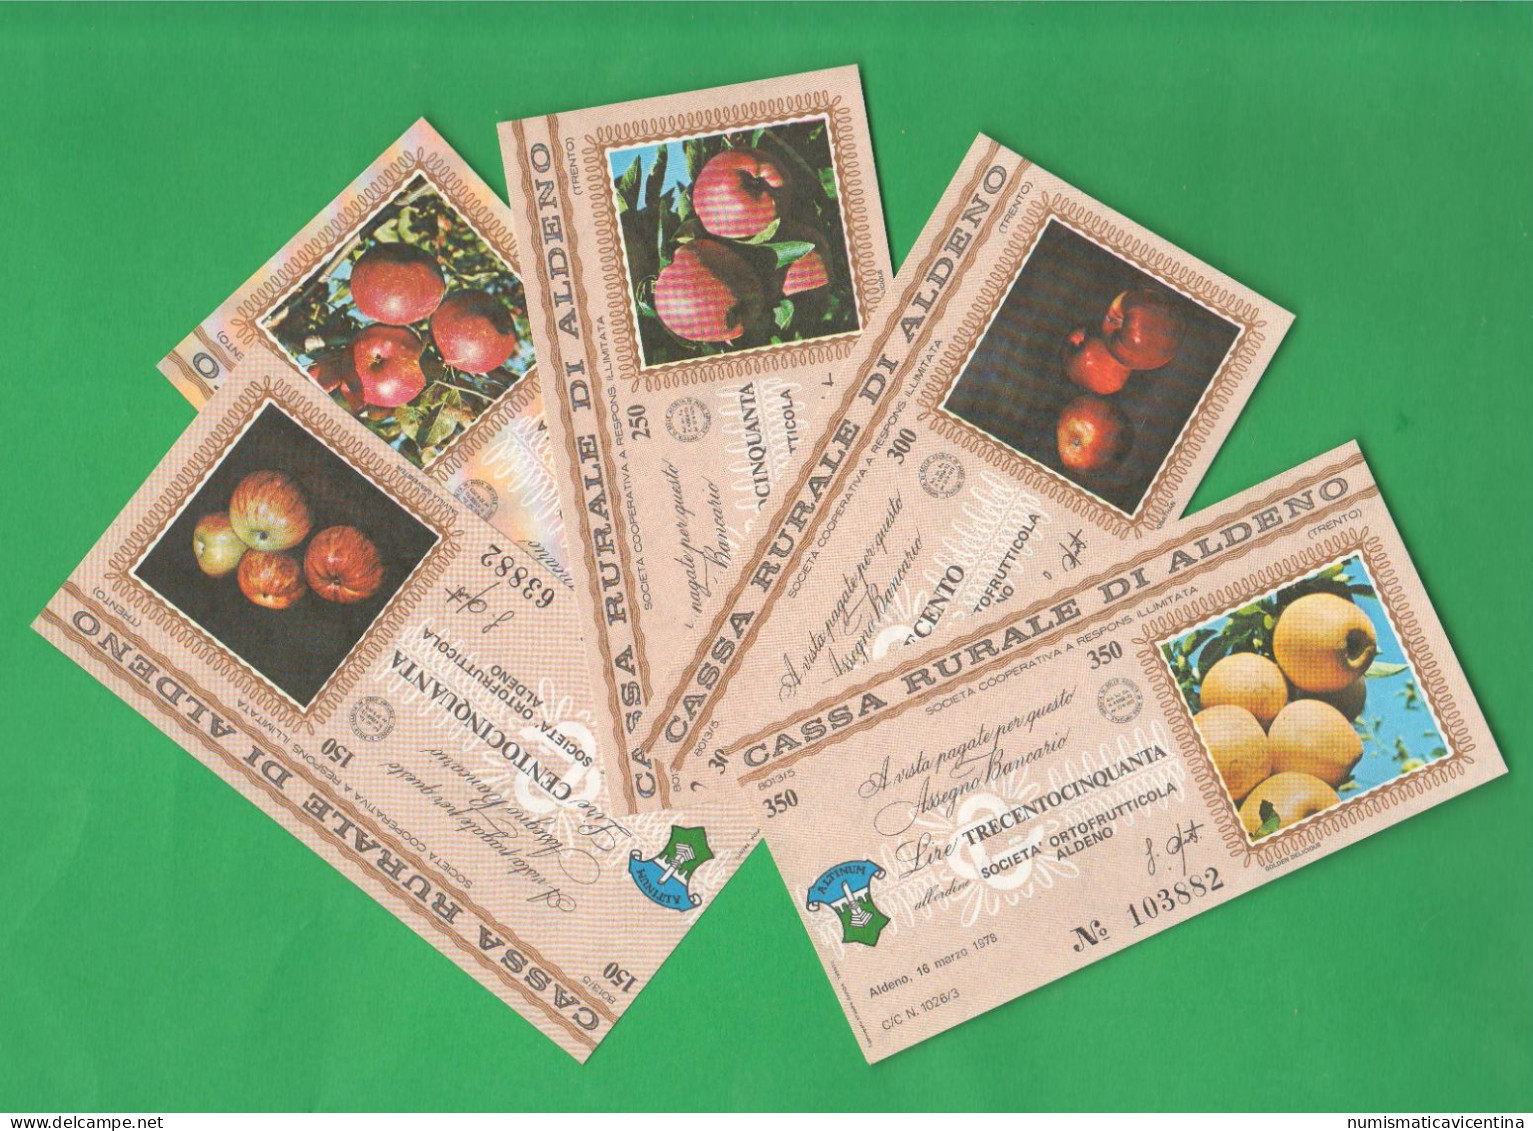 Trento Aldeno Cassa Rurale 5 Miniassegni 1978 Da 150 200 250 300 350 Lire Mele Apples Pommes - [10] Assegni E Miniassegni